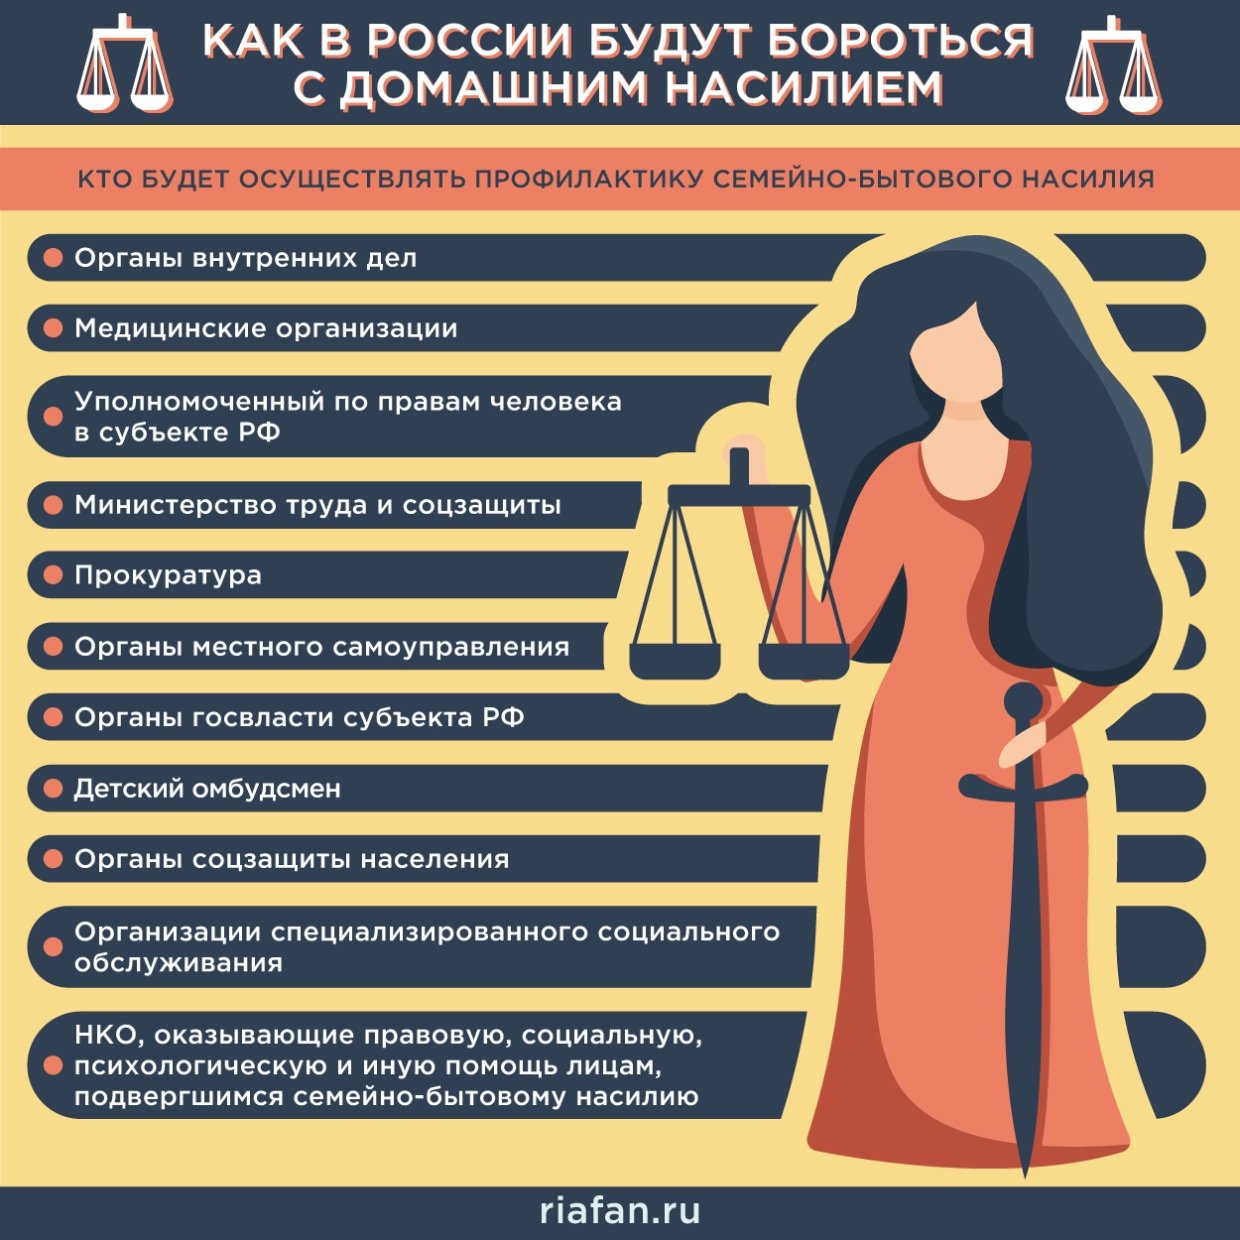 Как в России предлагают бороться с домашним насилием? Инфографика ФАН